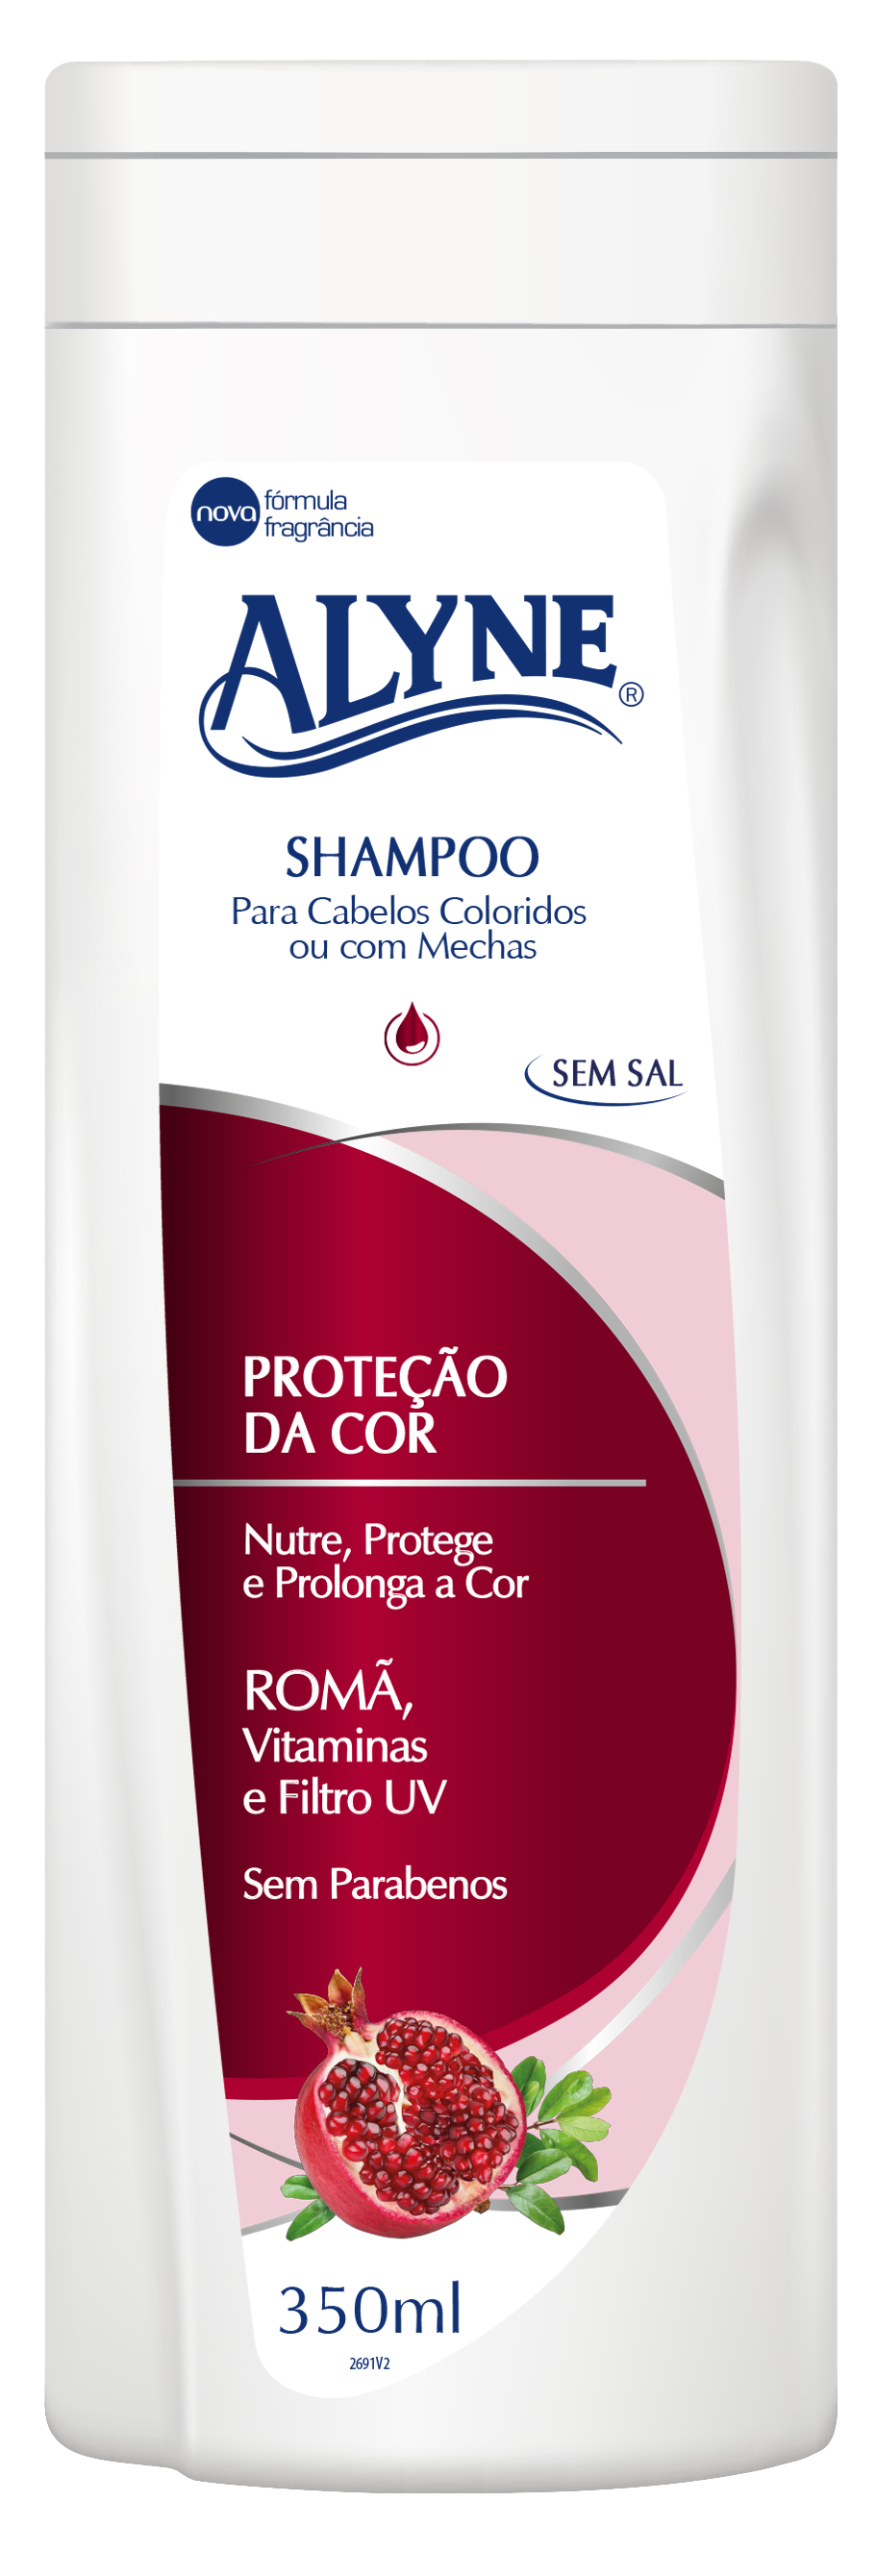 Shampoo Alyne Proteção da Cor 350ml